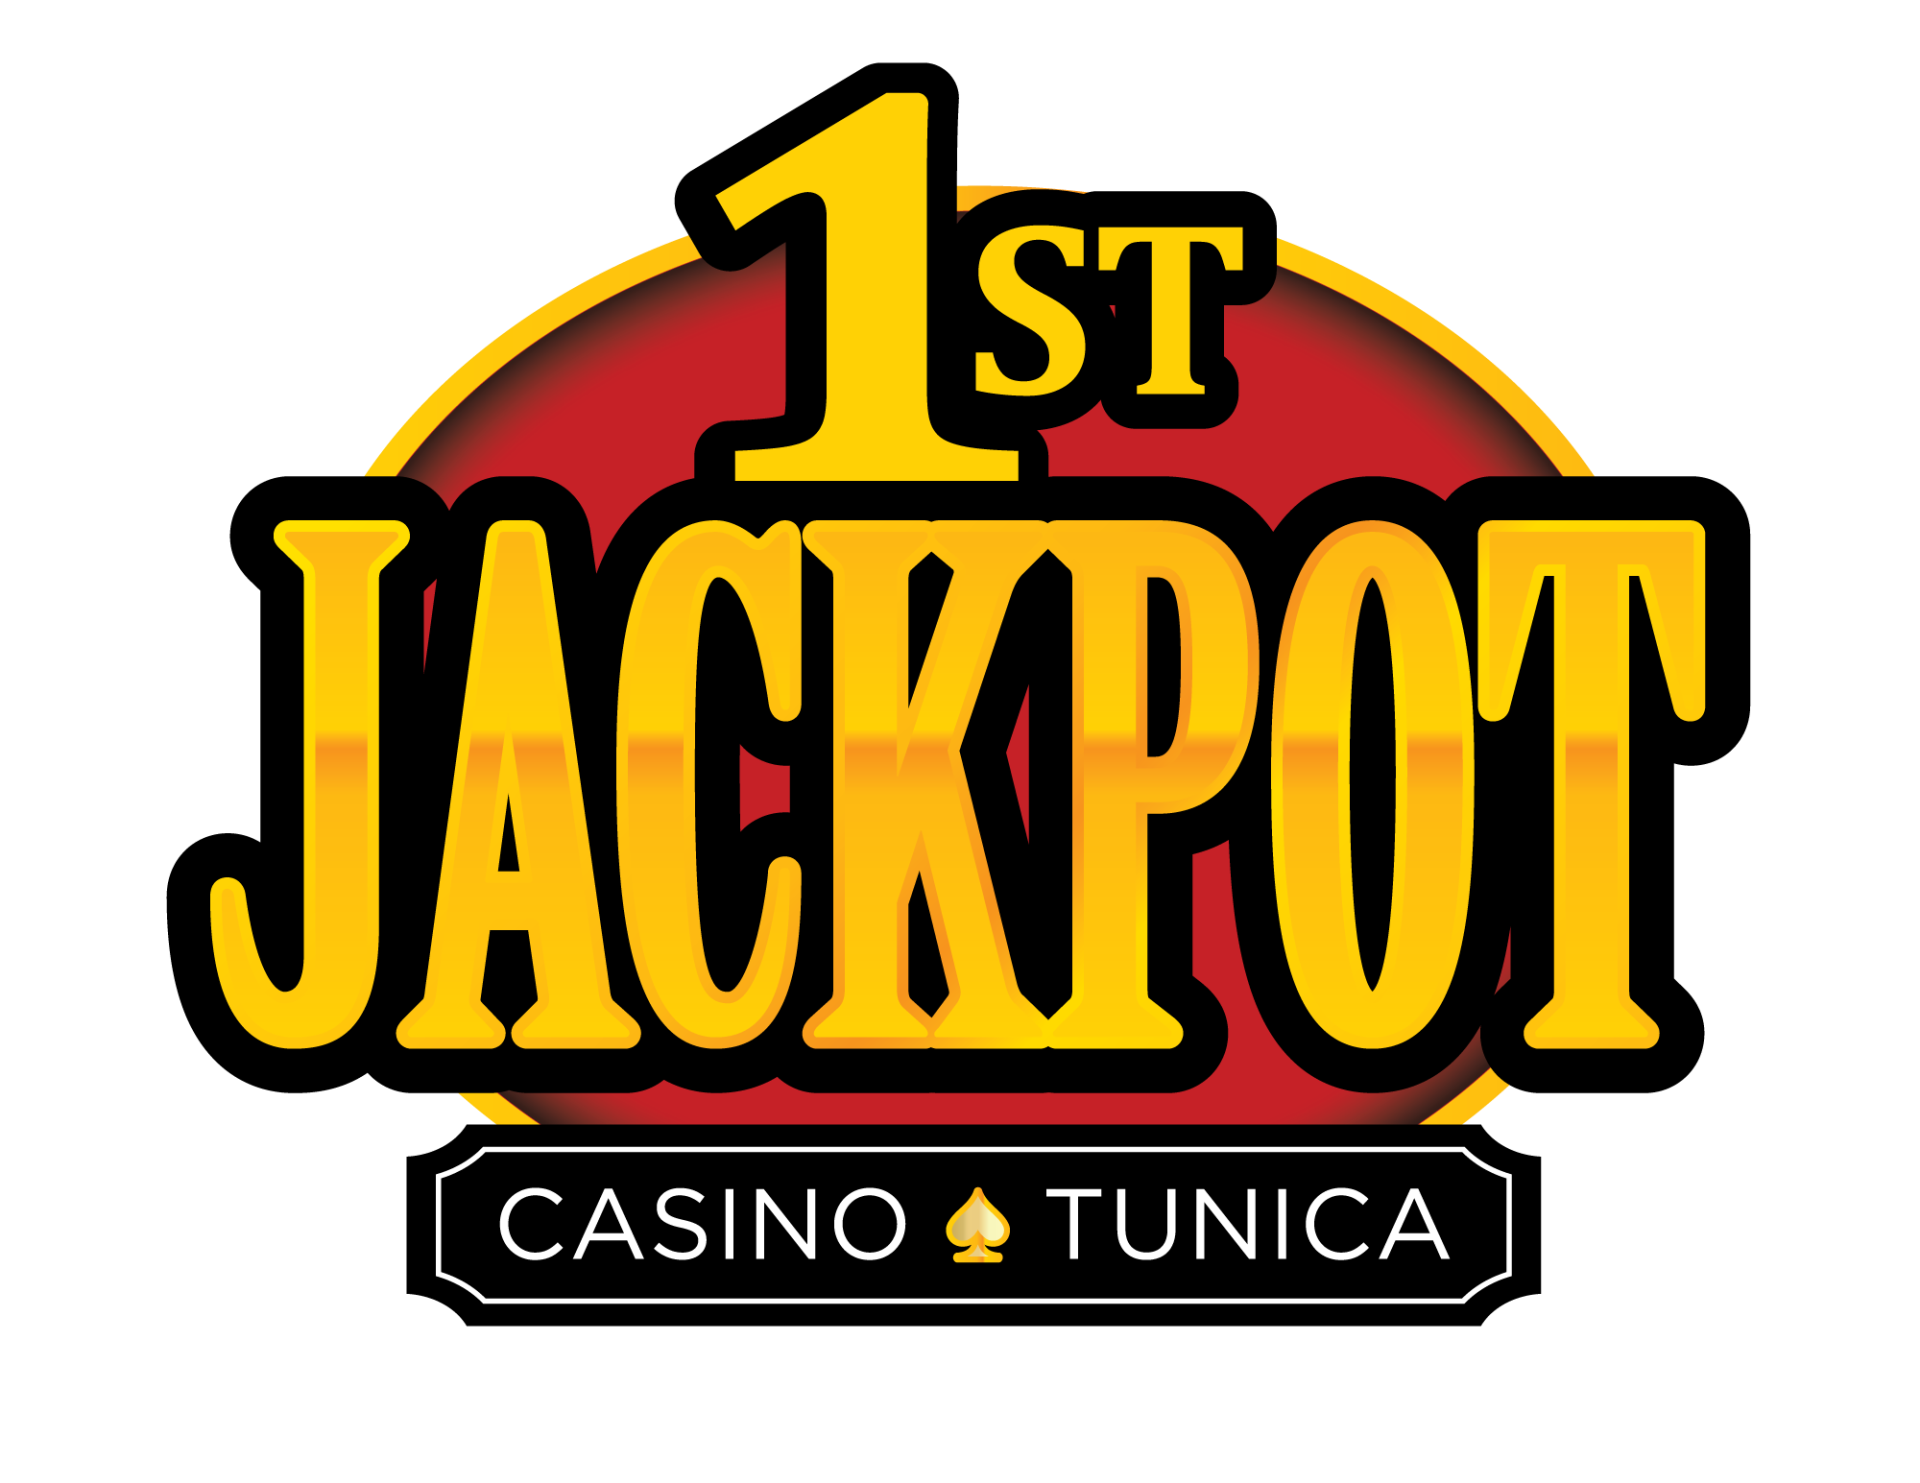 FirstJackpot_Logo_FINAL